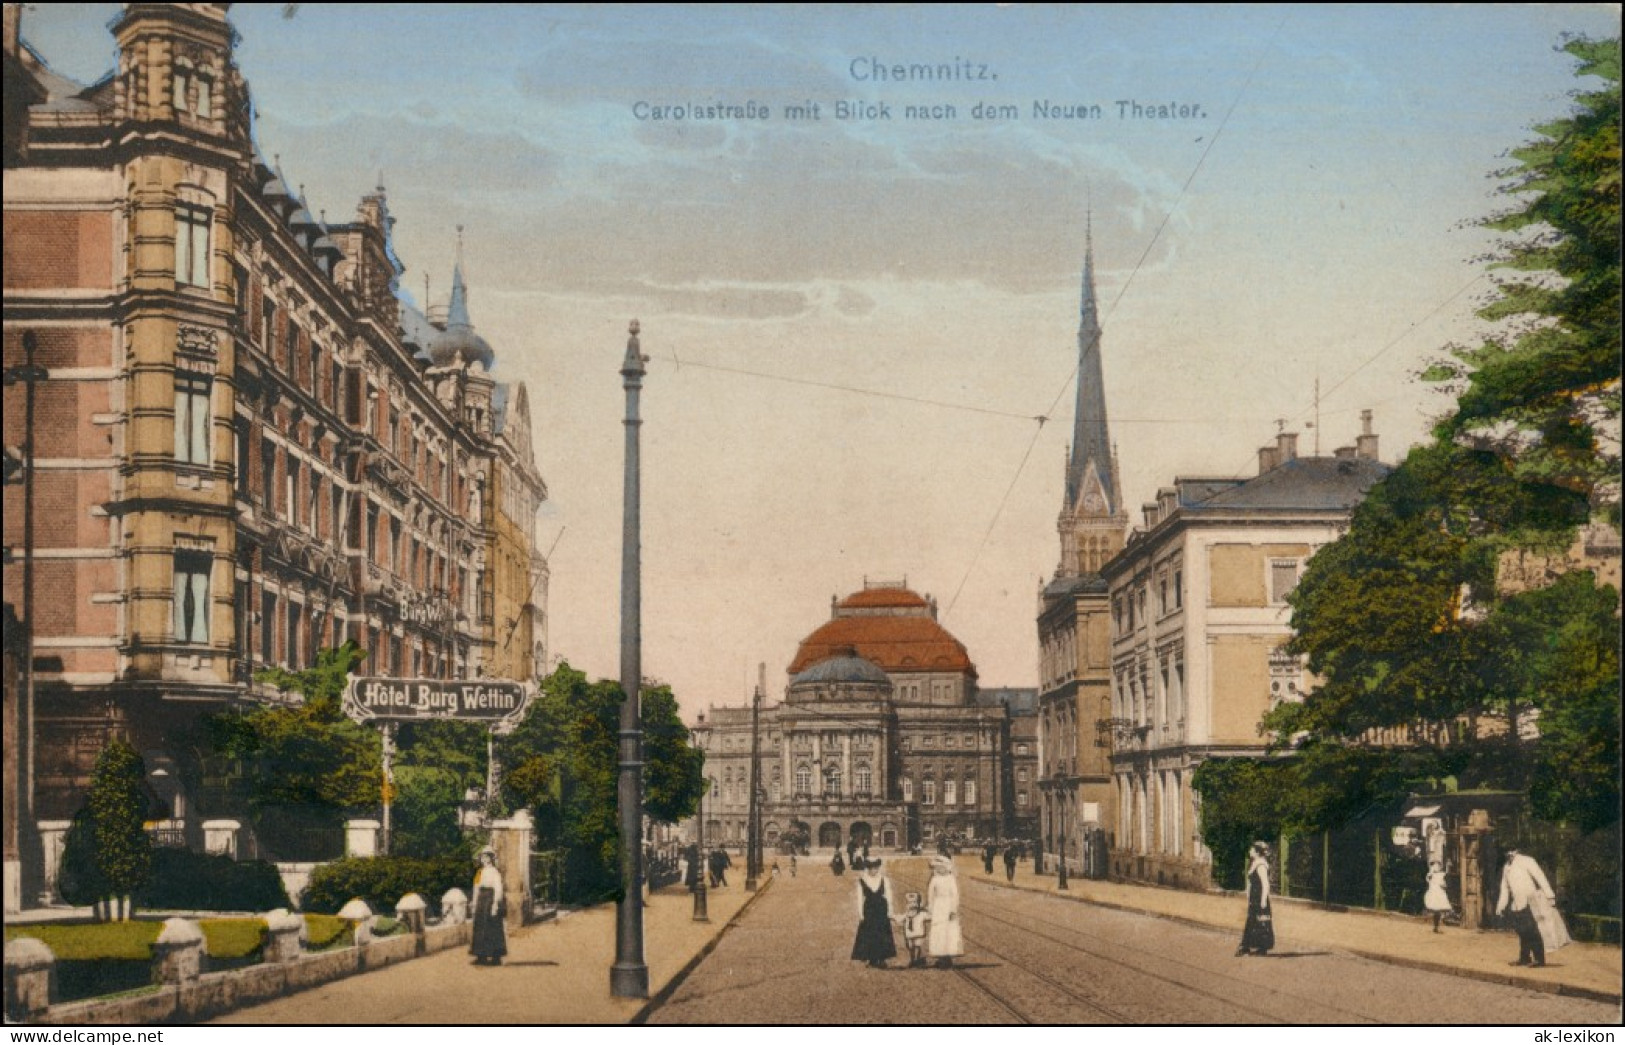 Ansichtskarte Chemnitz Carolastraße Hotel Burg Wettin 1909 - Chemnitz